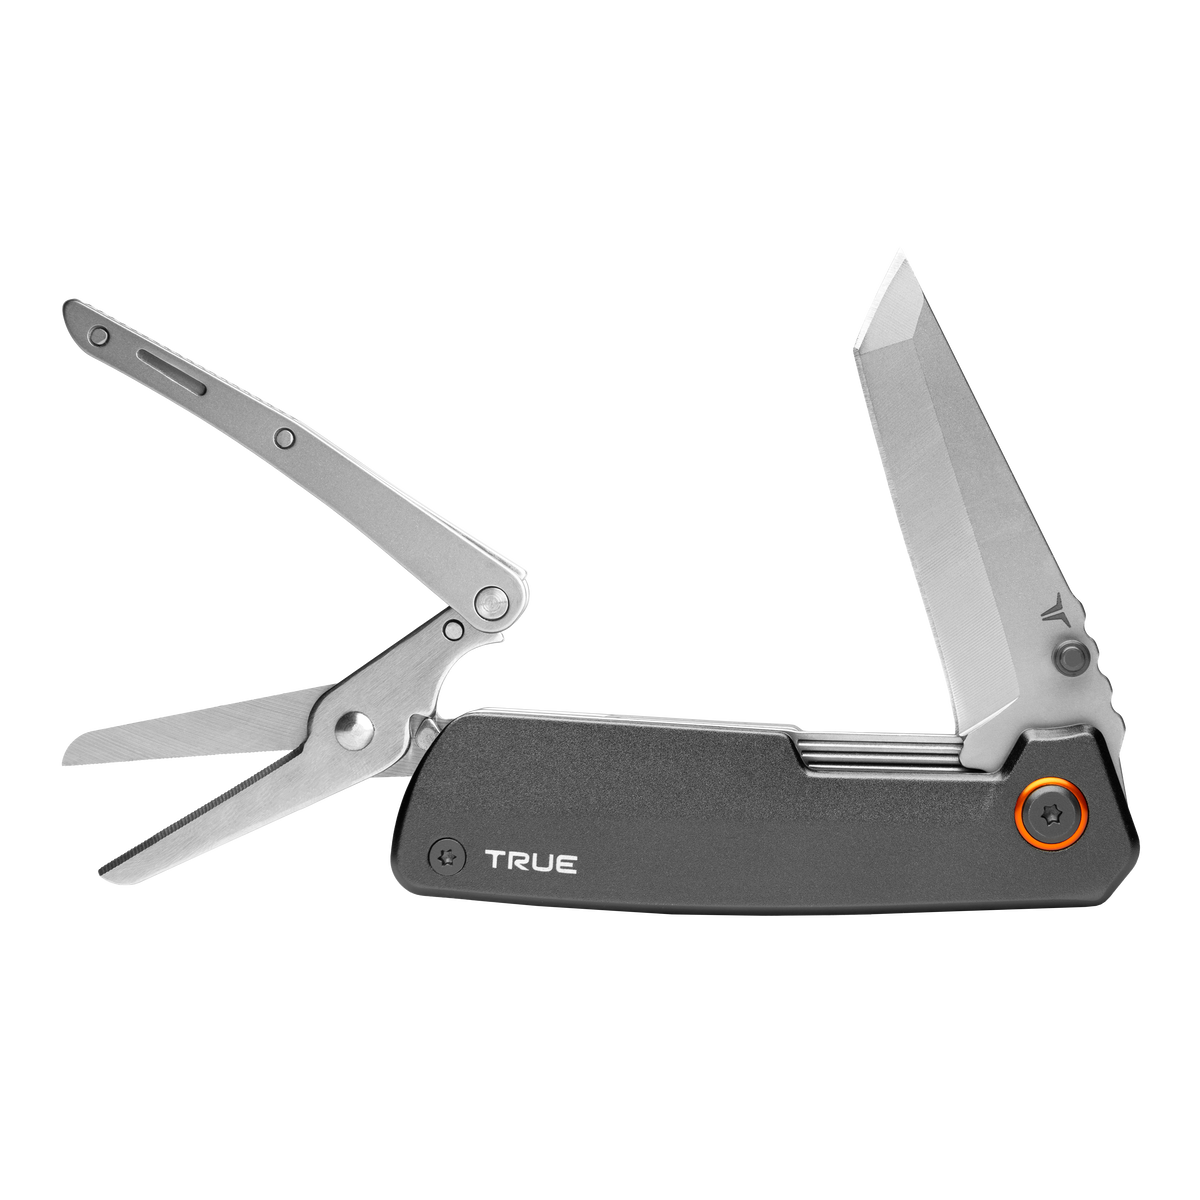 Dual Cutter Knife & Scissors Multi Tool